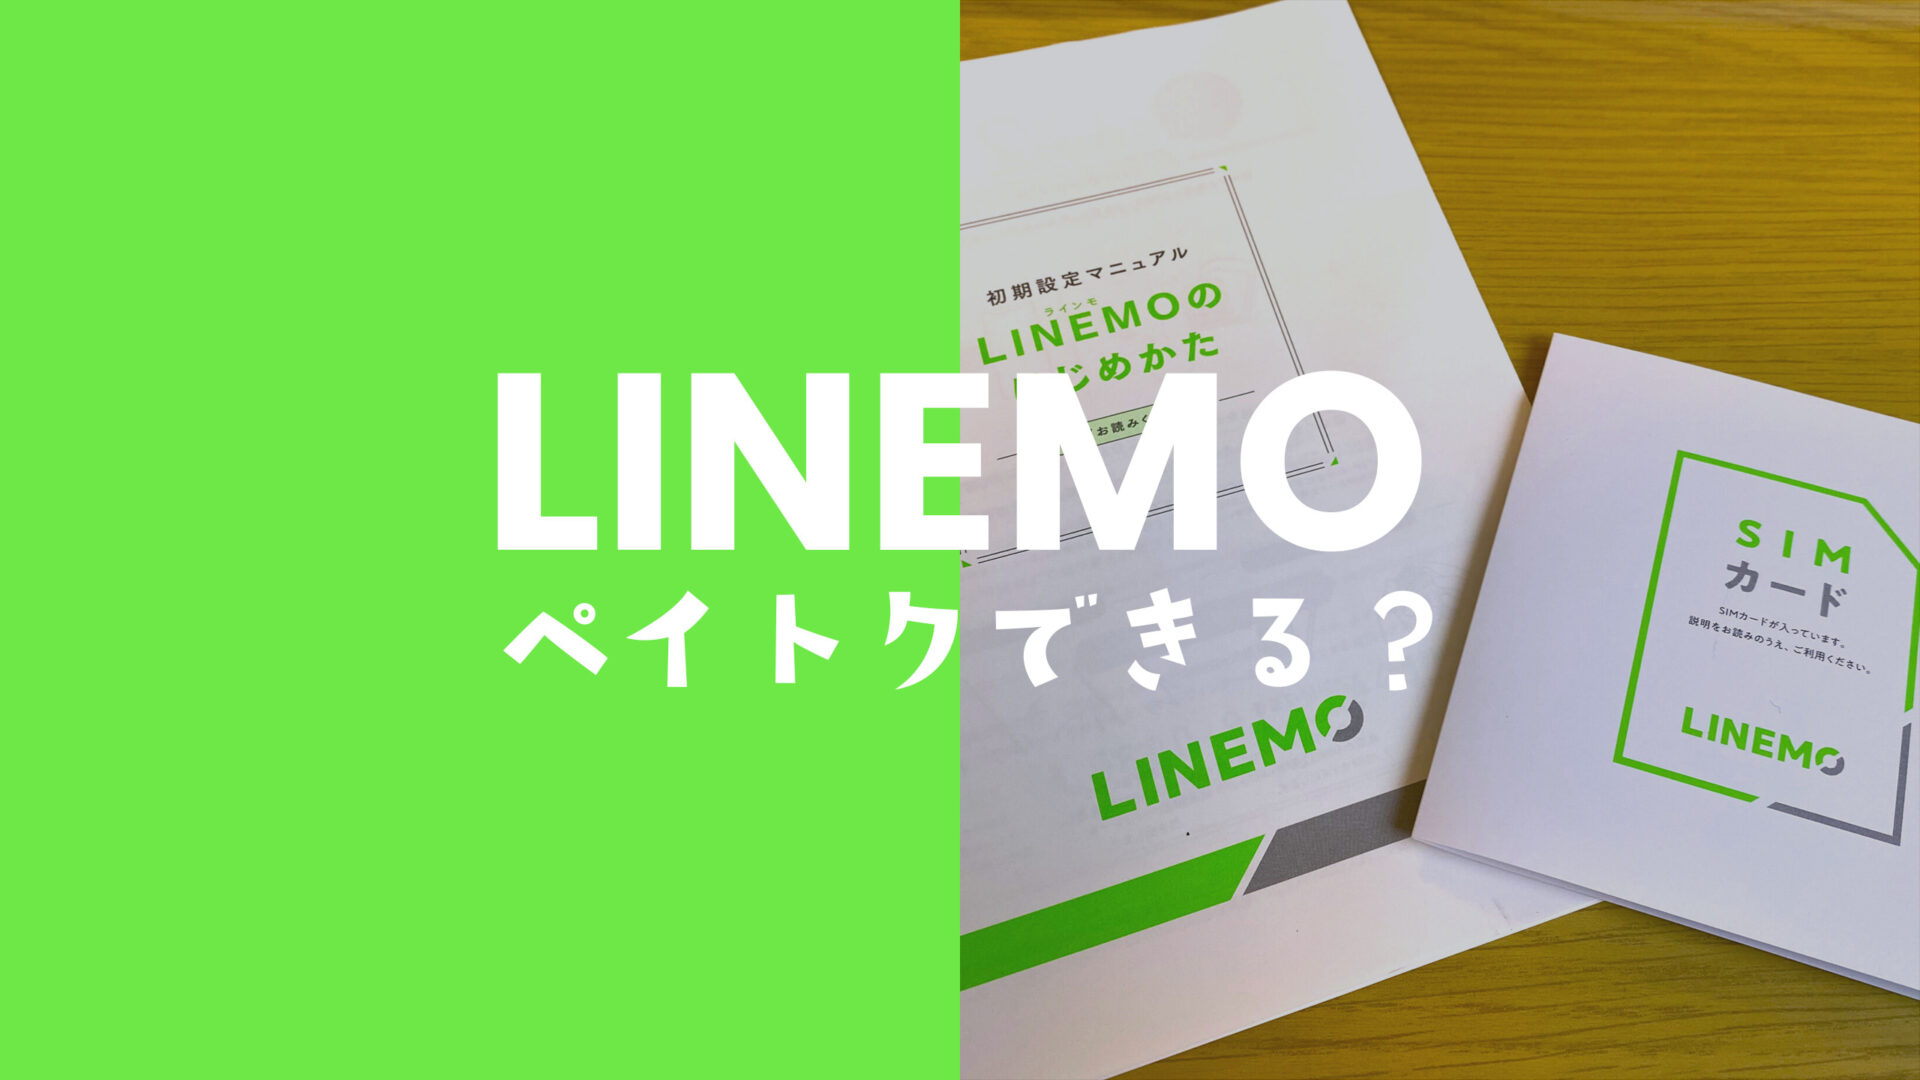 LINEMO(ラインモ)でペイトクはできない&対象外だが独自キャンペーンは強力。のサムネイル画像